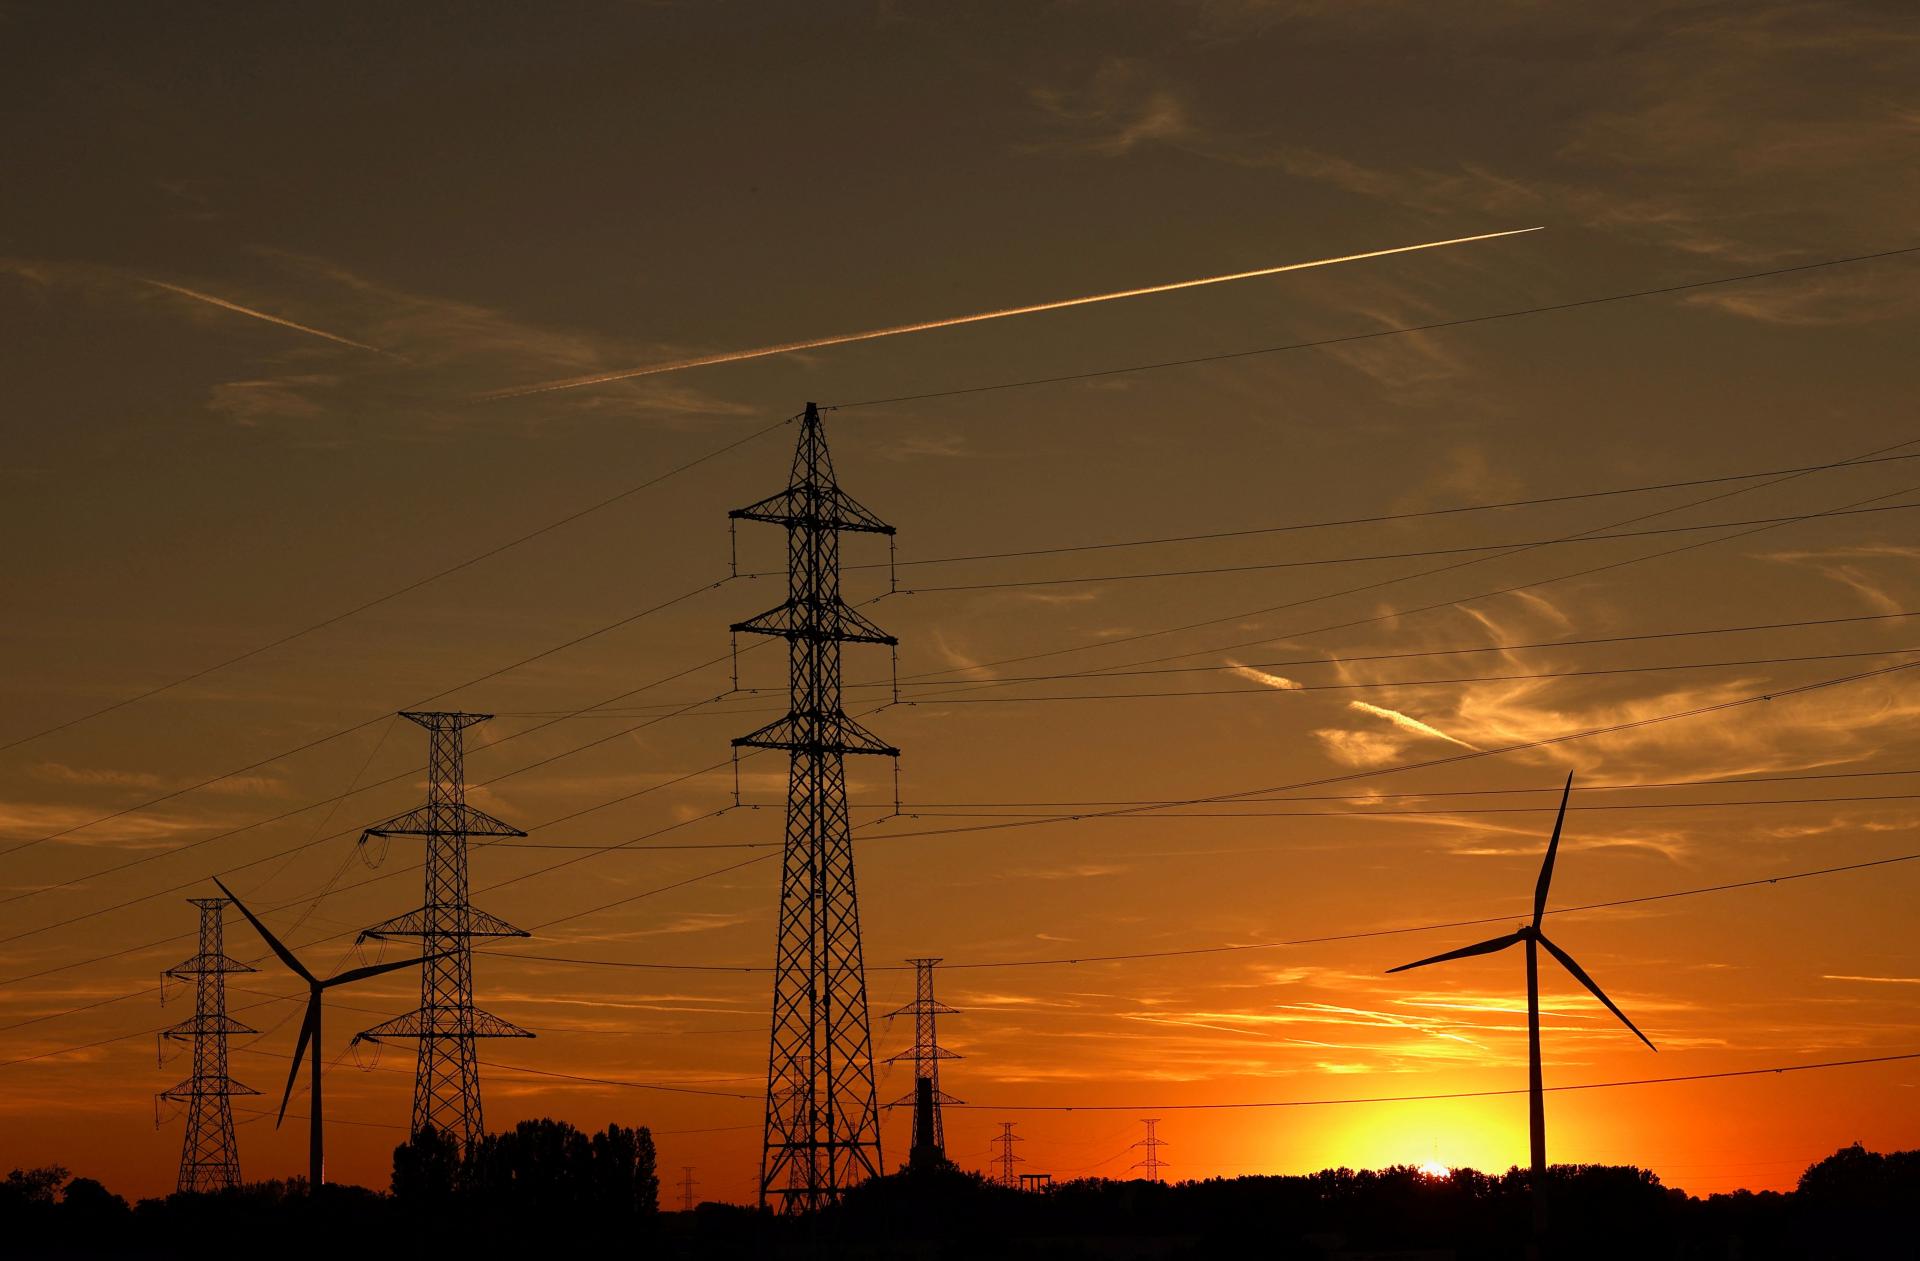 Španielsko môže mať v roku 2023 vyše polovicu elektriny z obnoviteľných zdrojov